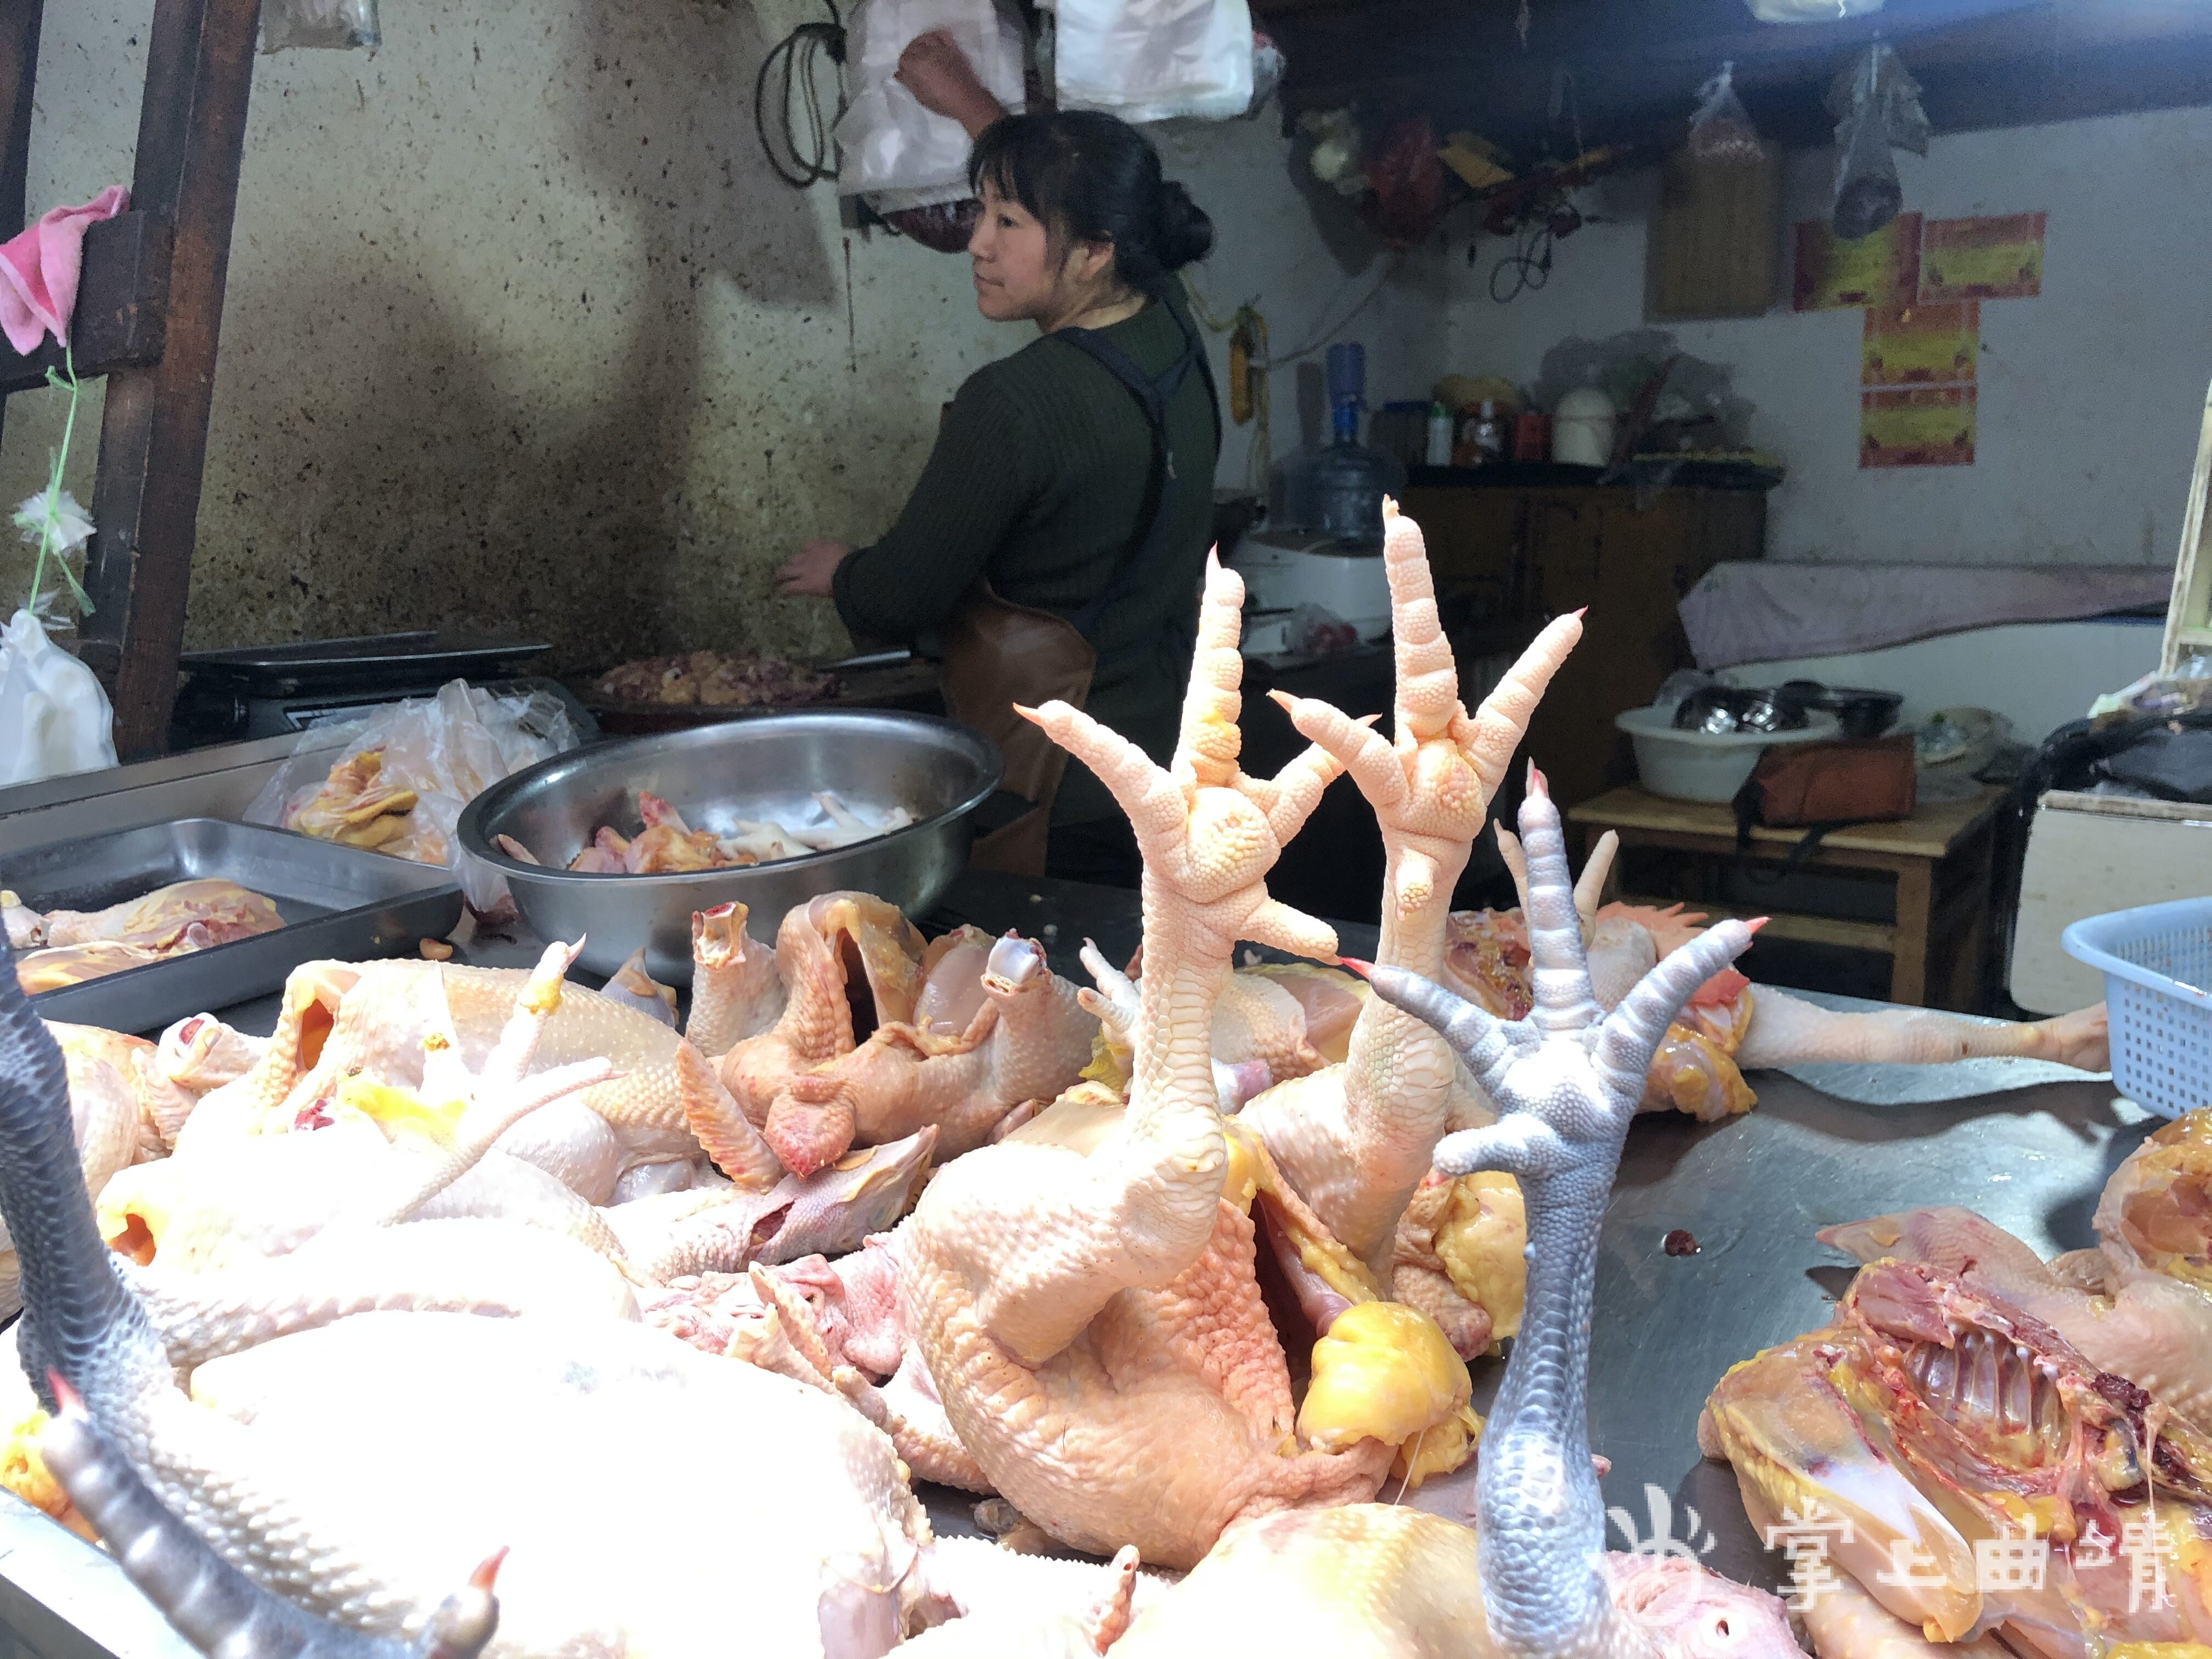 记者在采访中发现,对云南省出台的活禽类集中交易